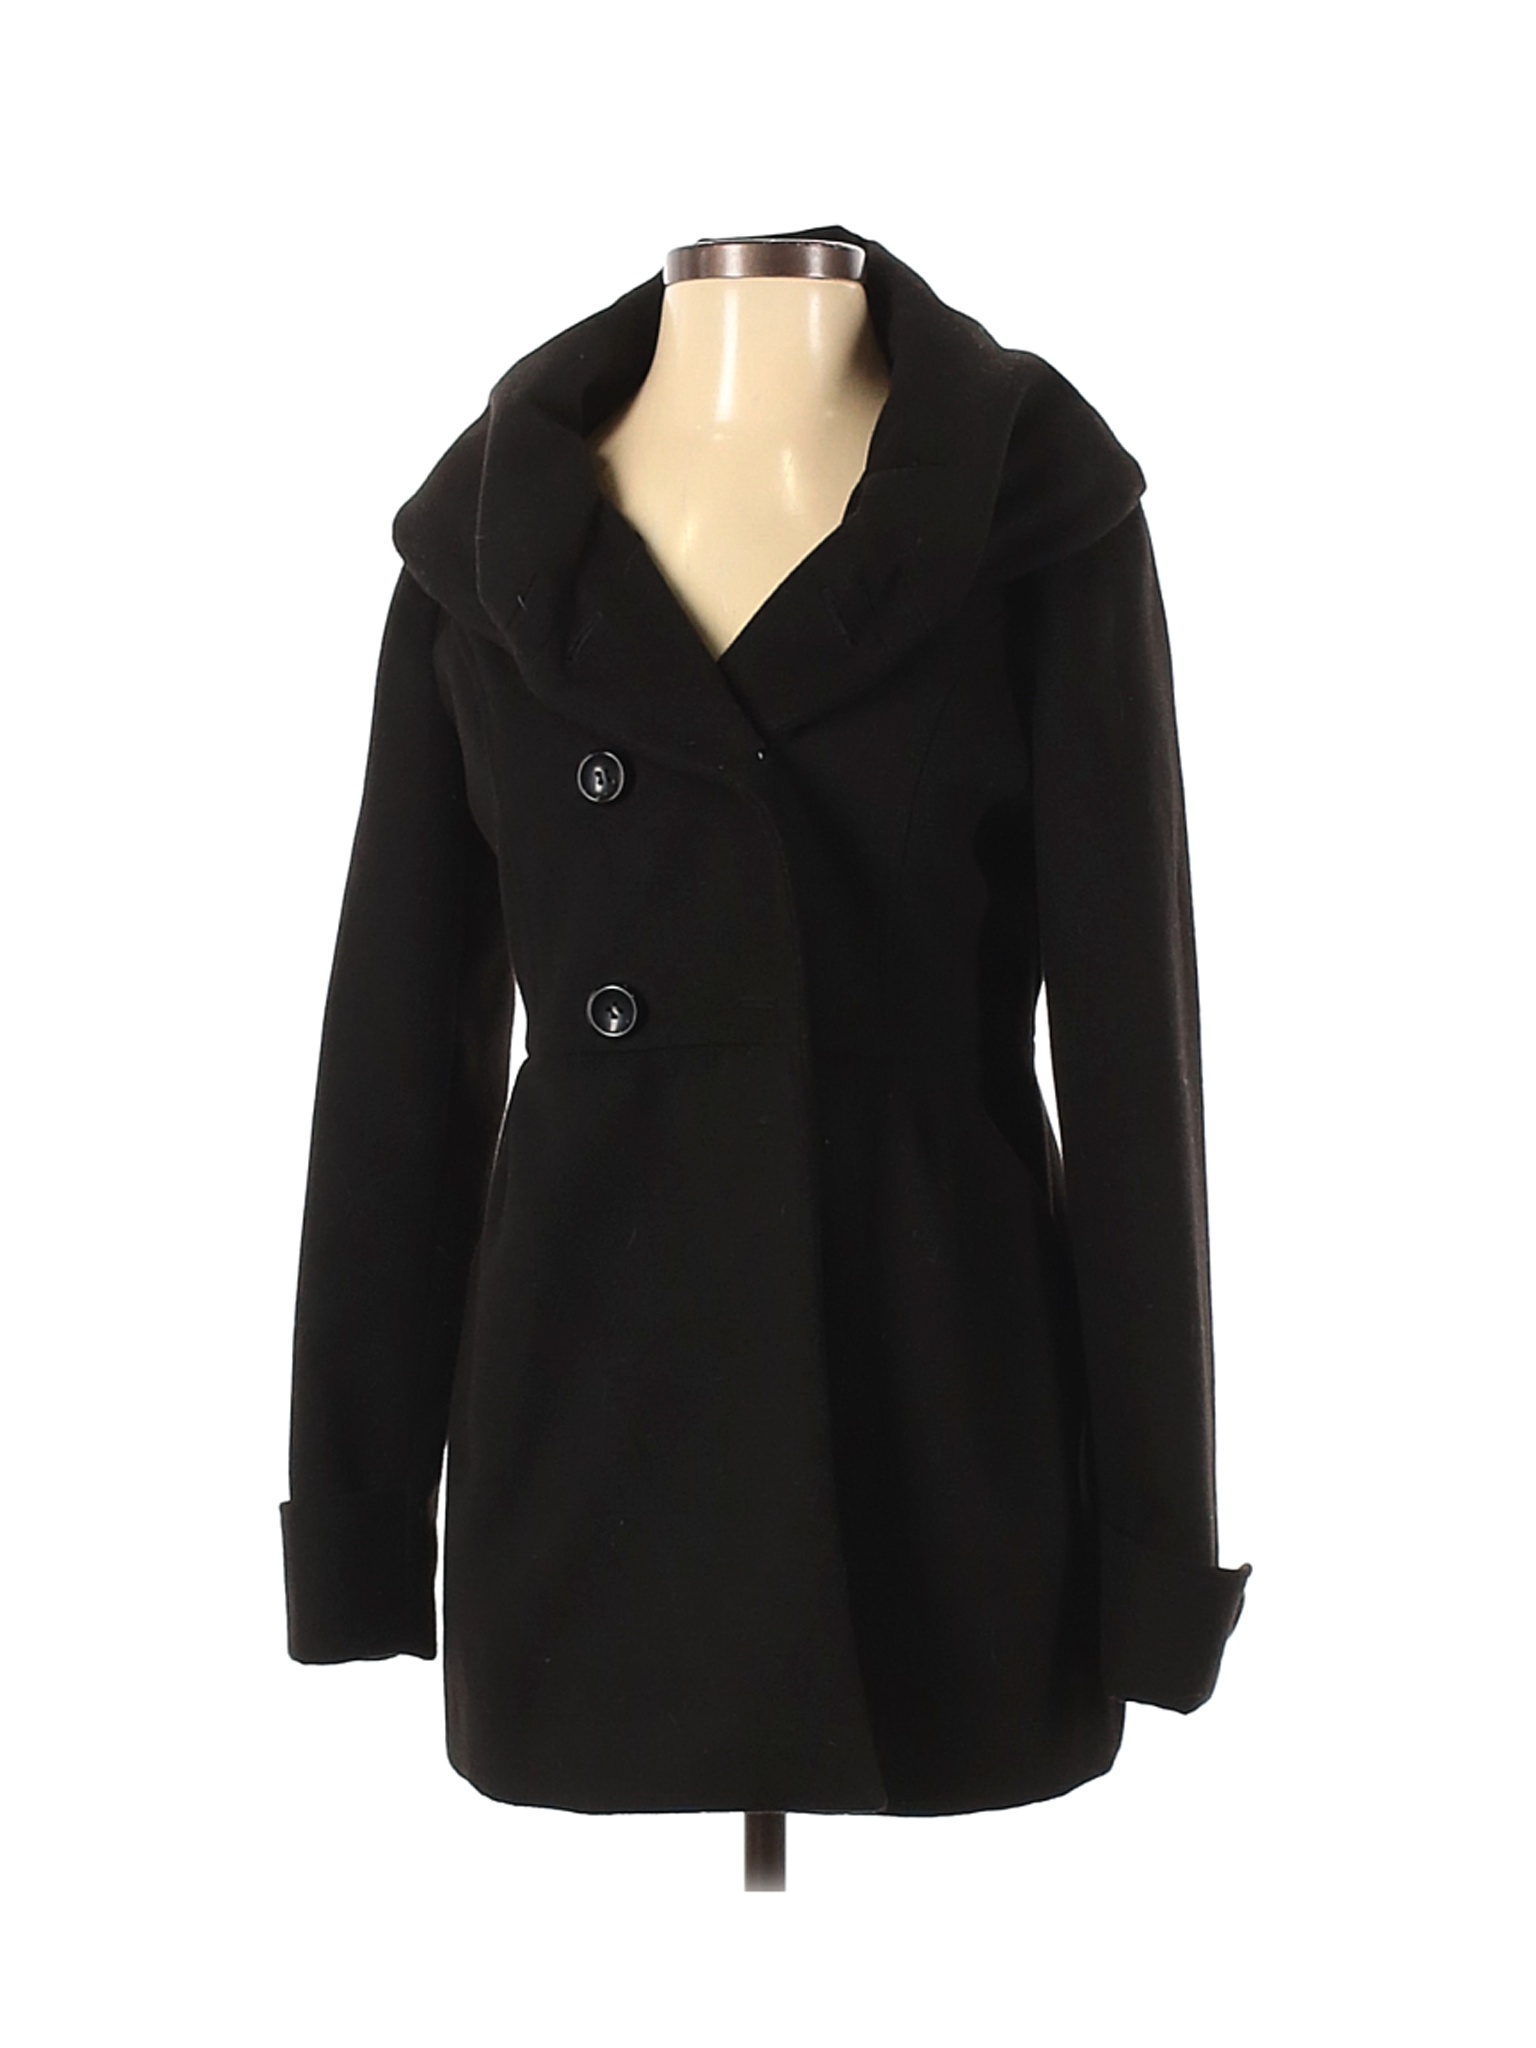 Assorted Brands Women Black Coat S | eBay